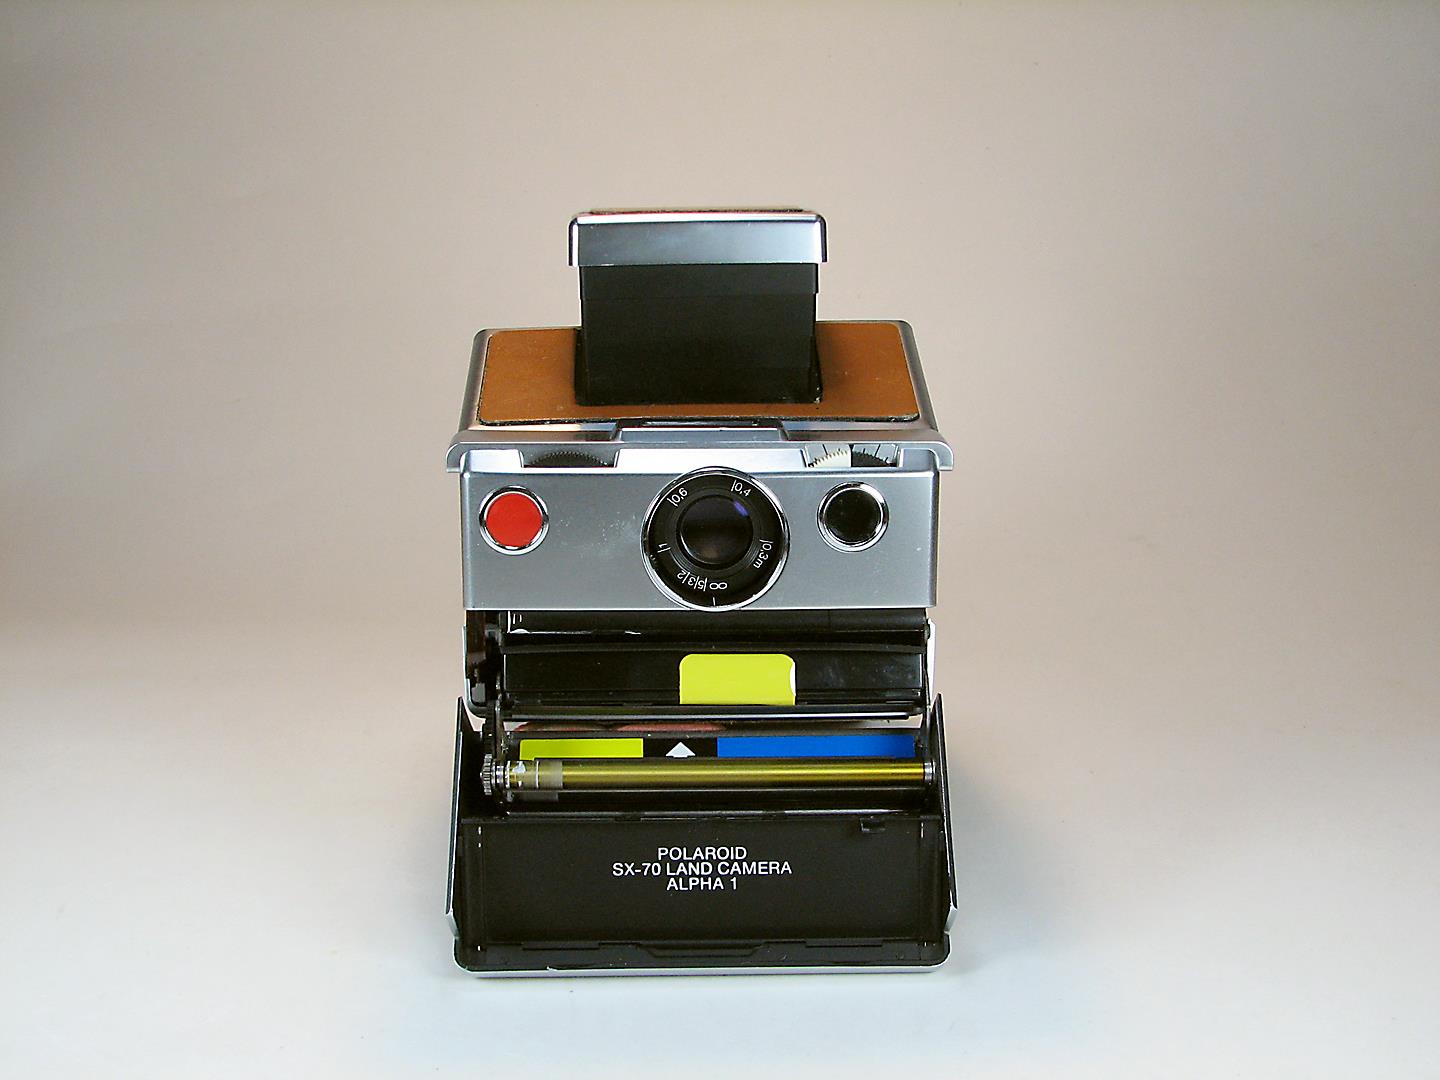 دوربین Polaroid SX-70 ALPHA 1